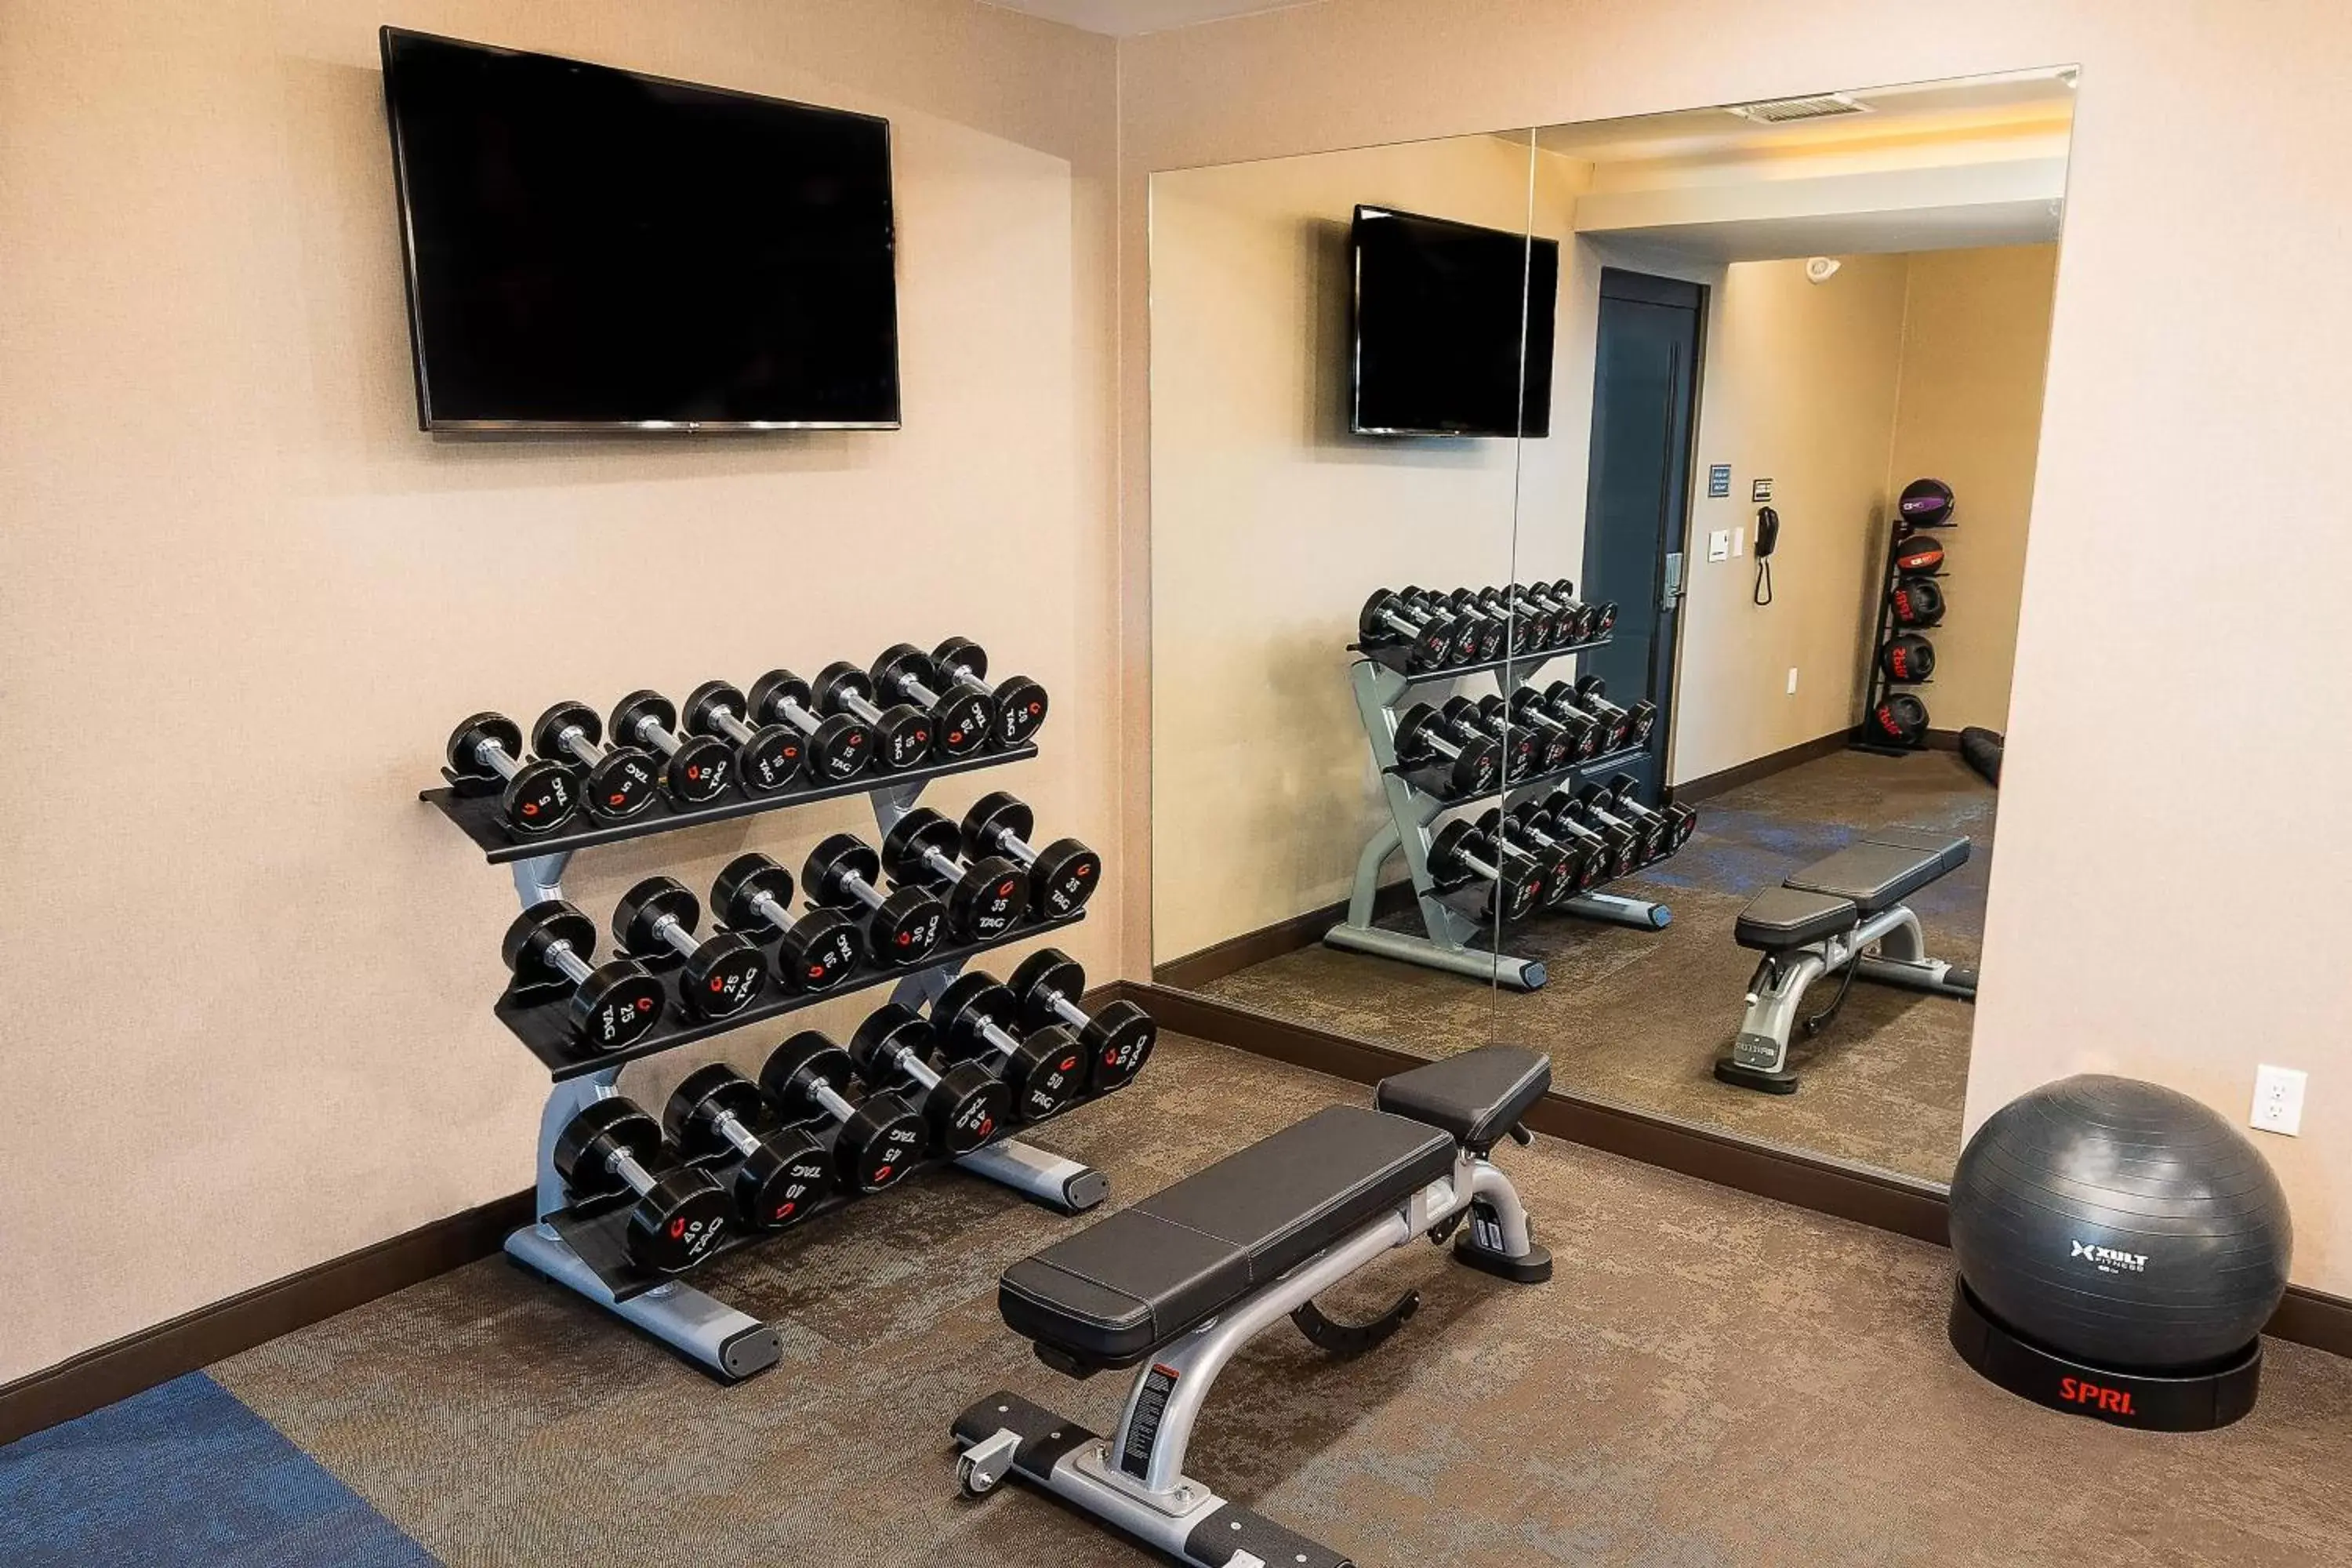 Fitness centre/facilities, Fitness Center/Facilities in Residence Inn by Marriott Rocklin Roseville